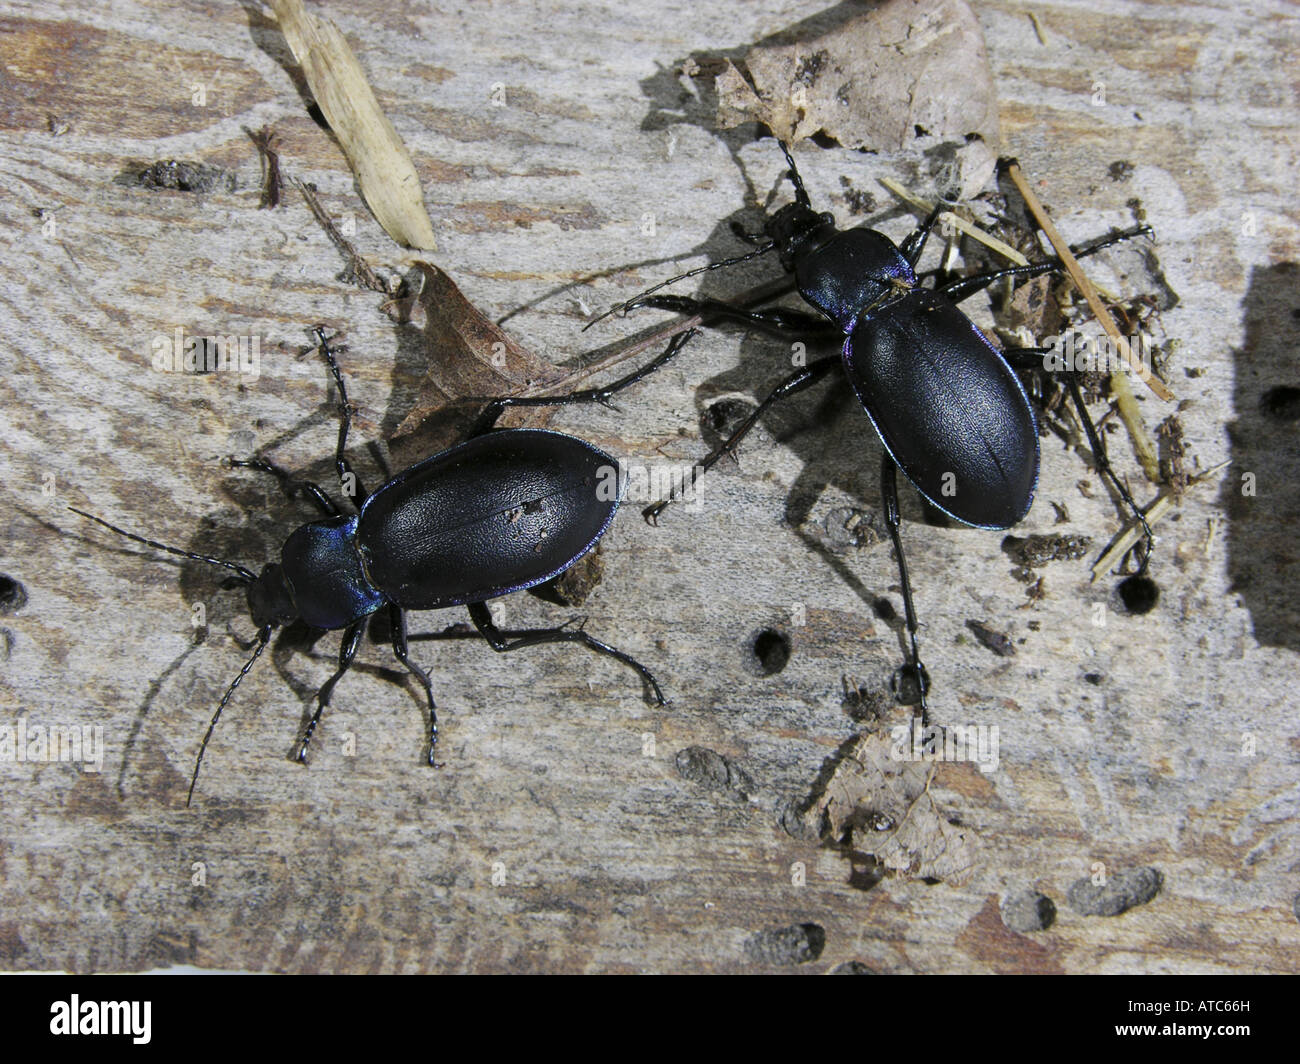 Massa viola beetle (Carabus tendente al violaceo), camminando su legno morto Foto Stock